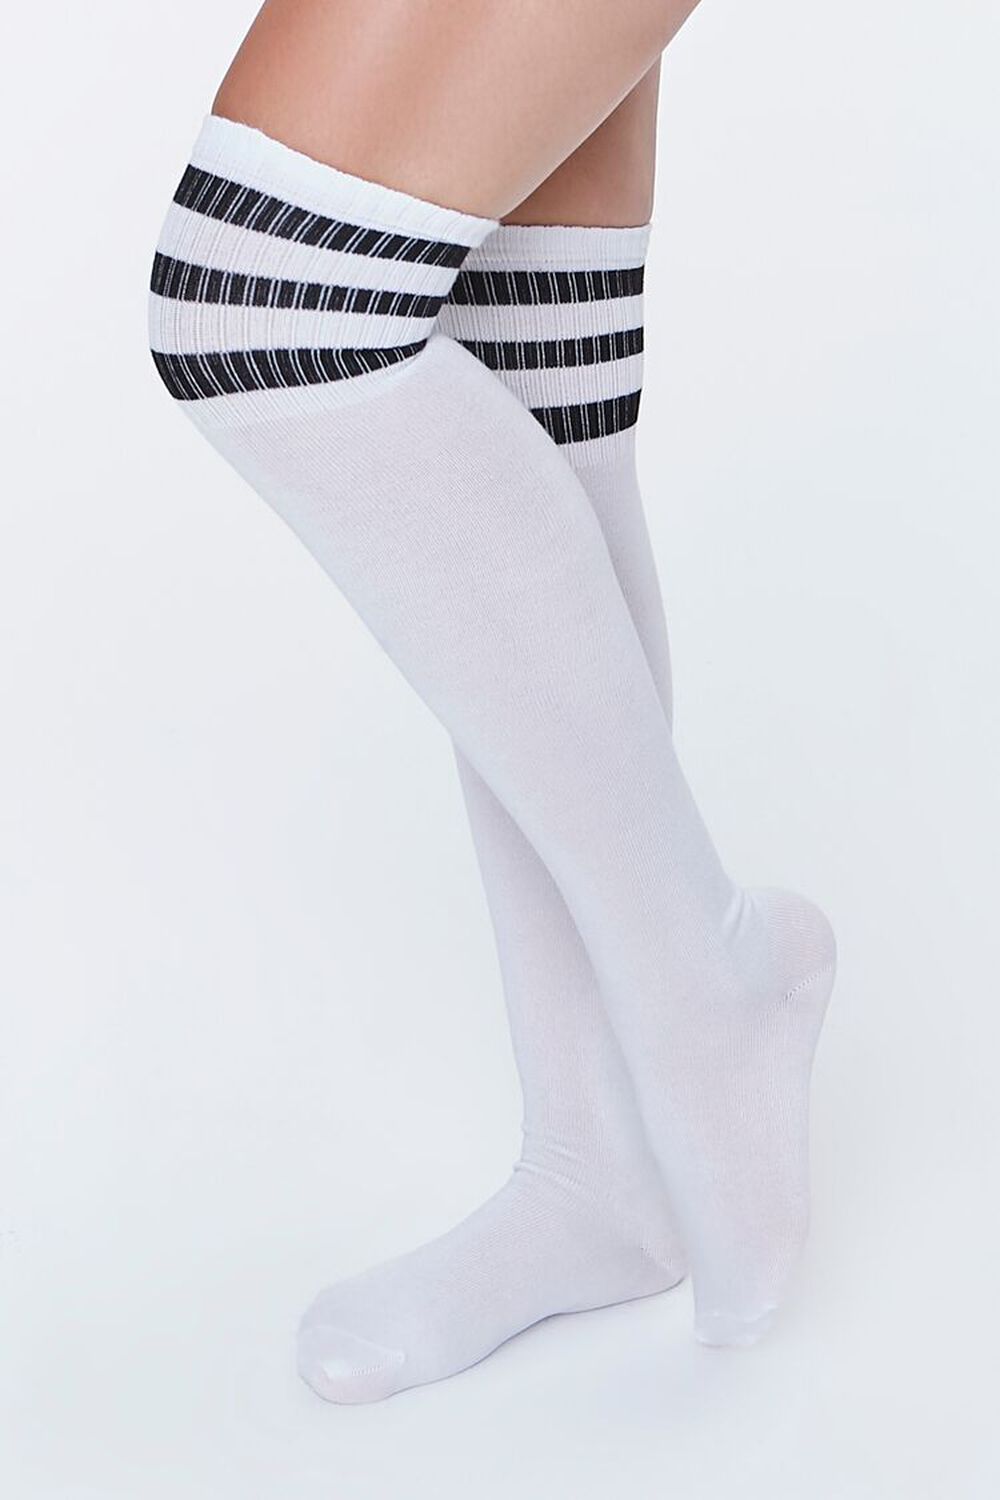 WHITE/BLACK Striped Over-the-Knee Socks, image 1